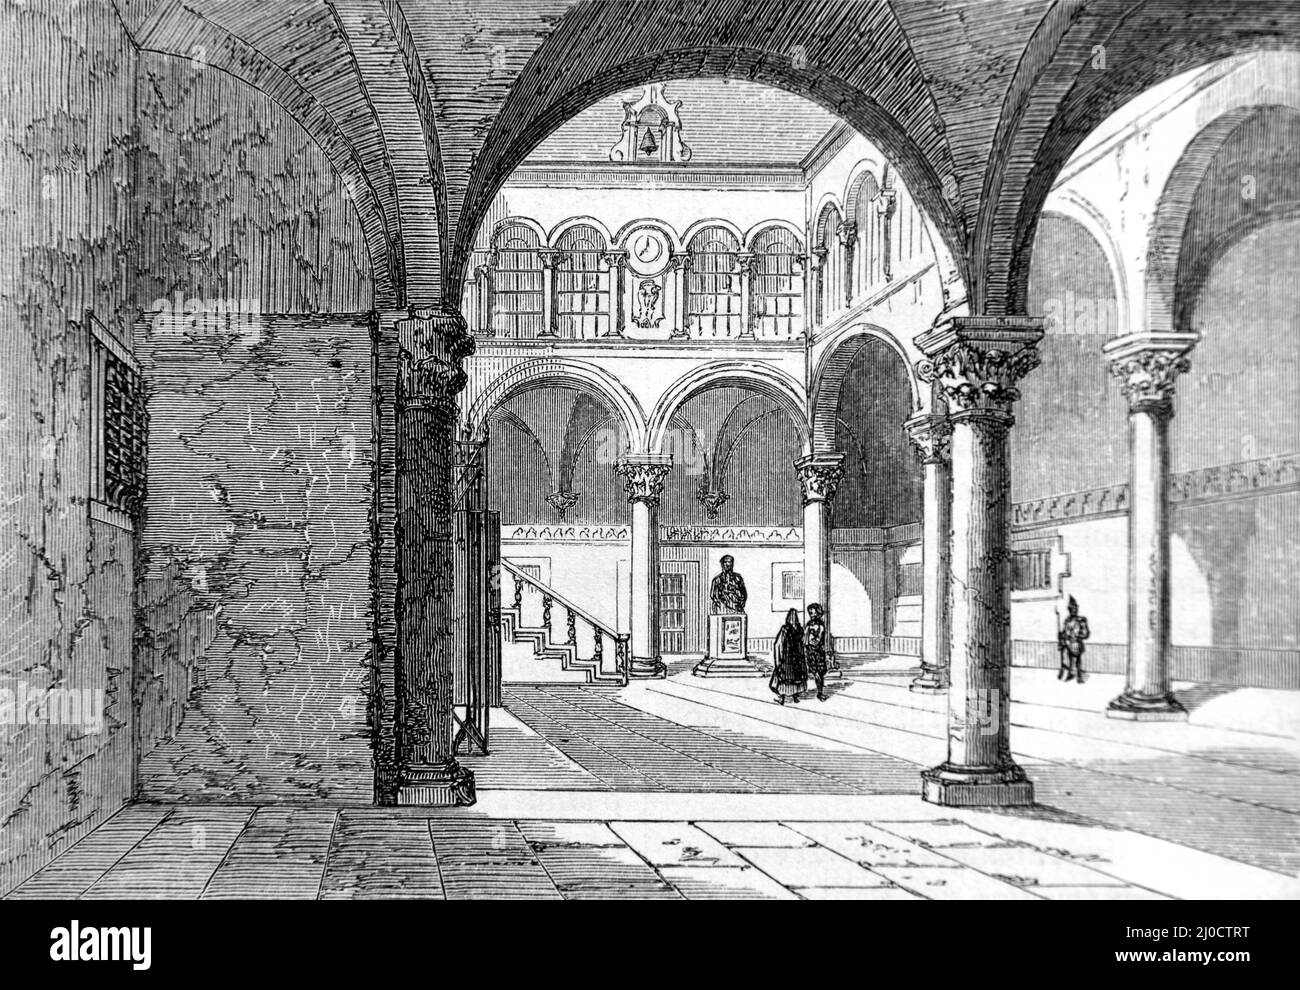 Cour intérieure du Palais Sponza Dubrovnik Croatie. Illustration ancienne ou gravure 1860. Banque D'Images